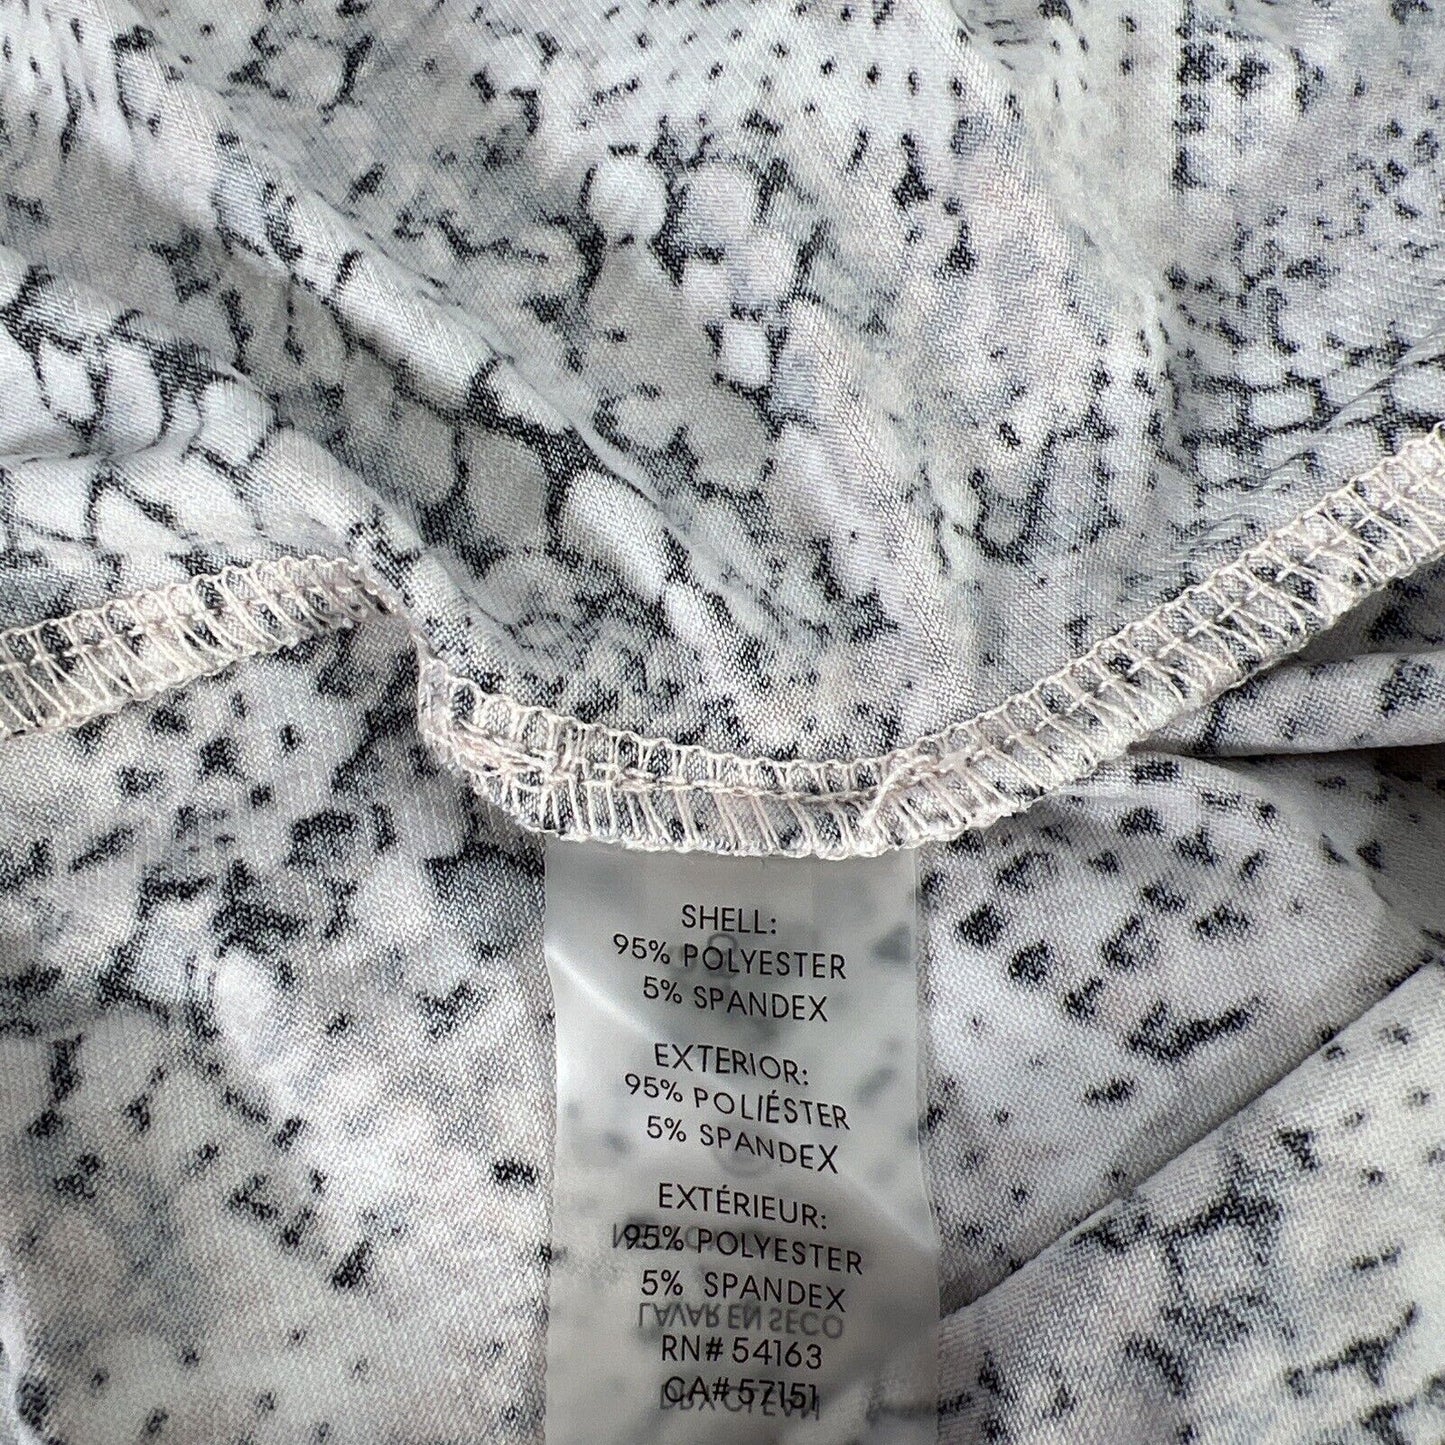 Camiseta sin mangas con estampado de reptiles en blanco y negro de Calvin Klein para mujer - L